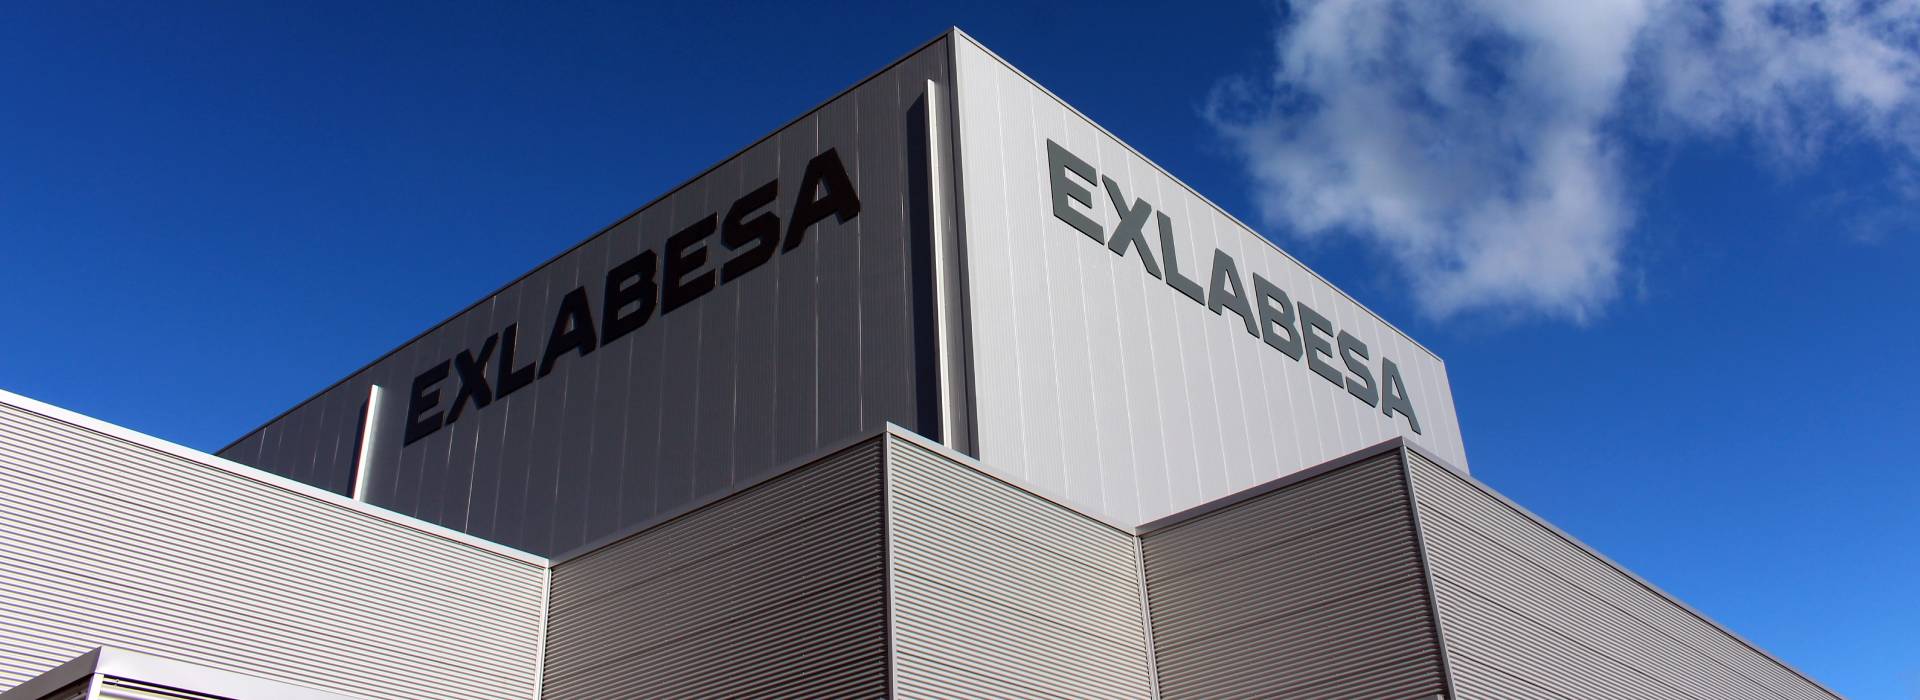 EXLABESA anuncia la adquisición de la empresa de extrusión francesa FLANDRIA ALUMINIUM